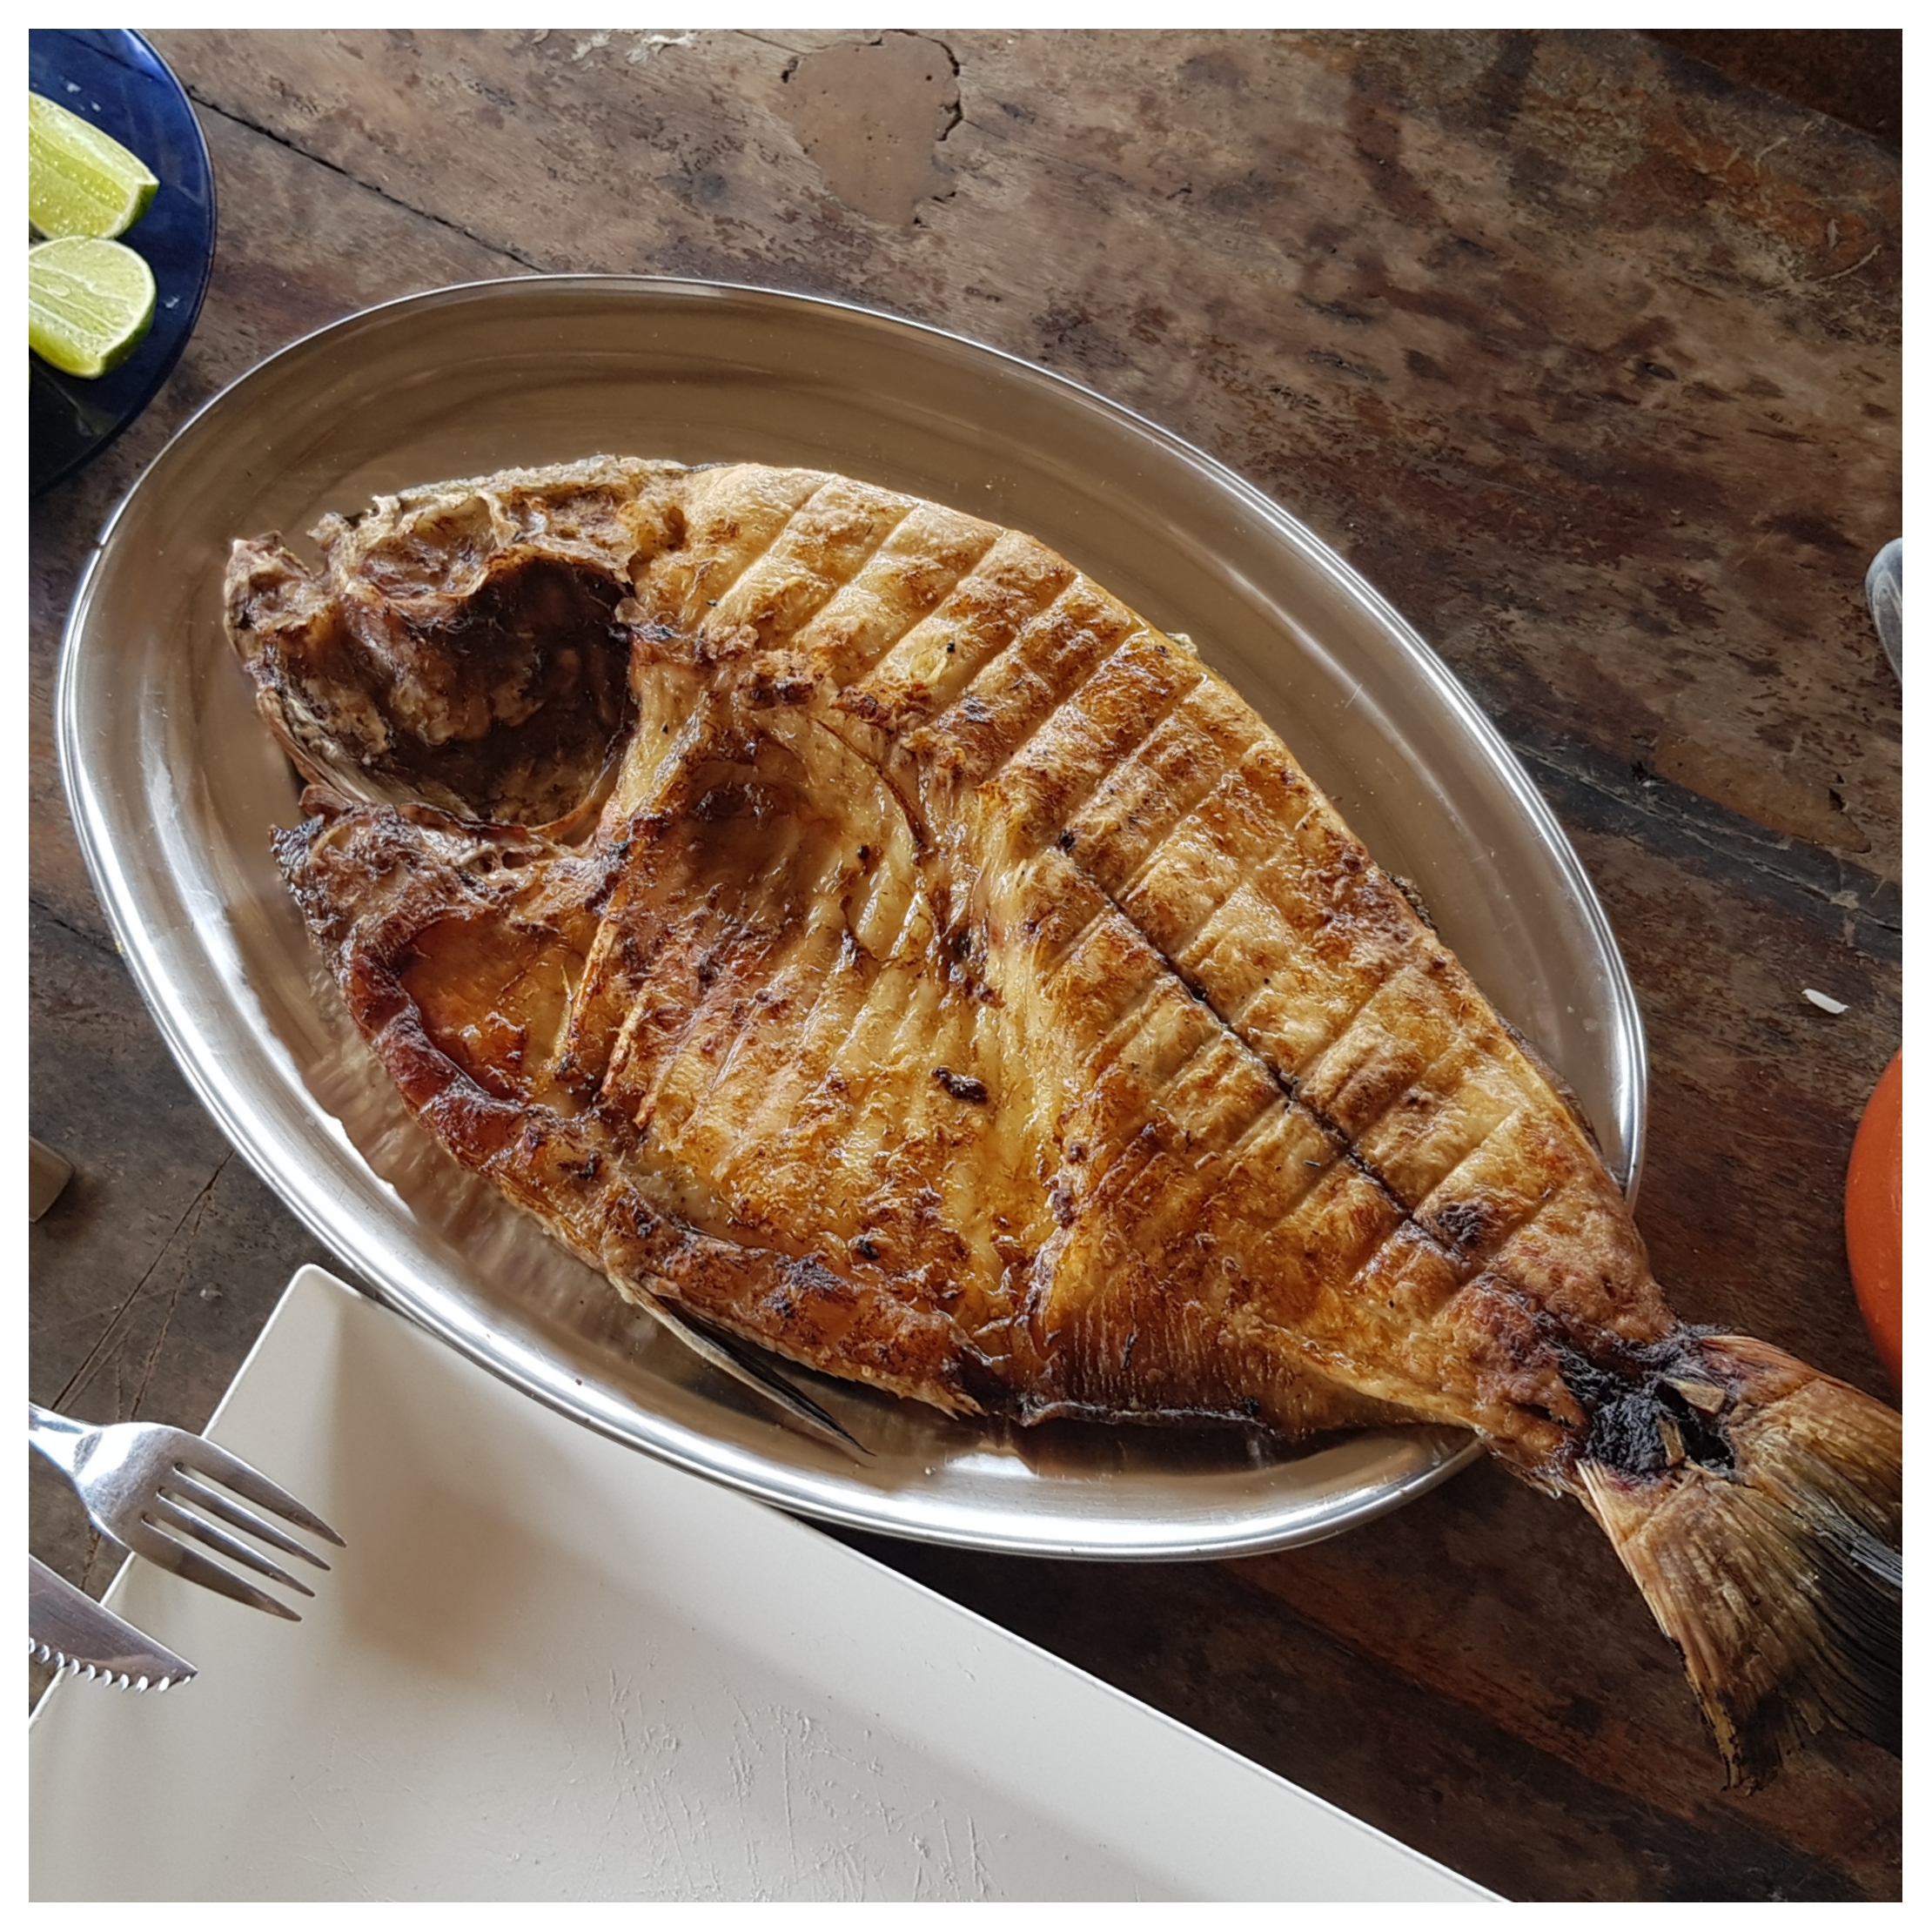 Peixe tambaqui assado servido na mesa de madeira